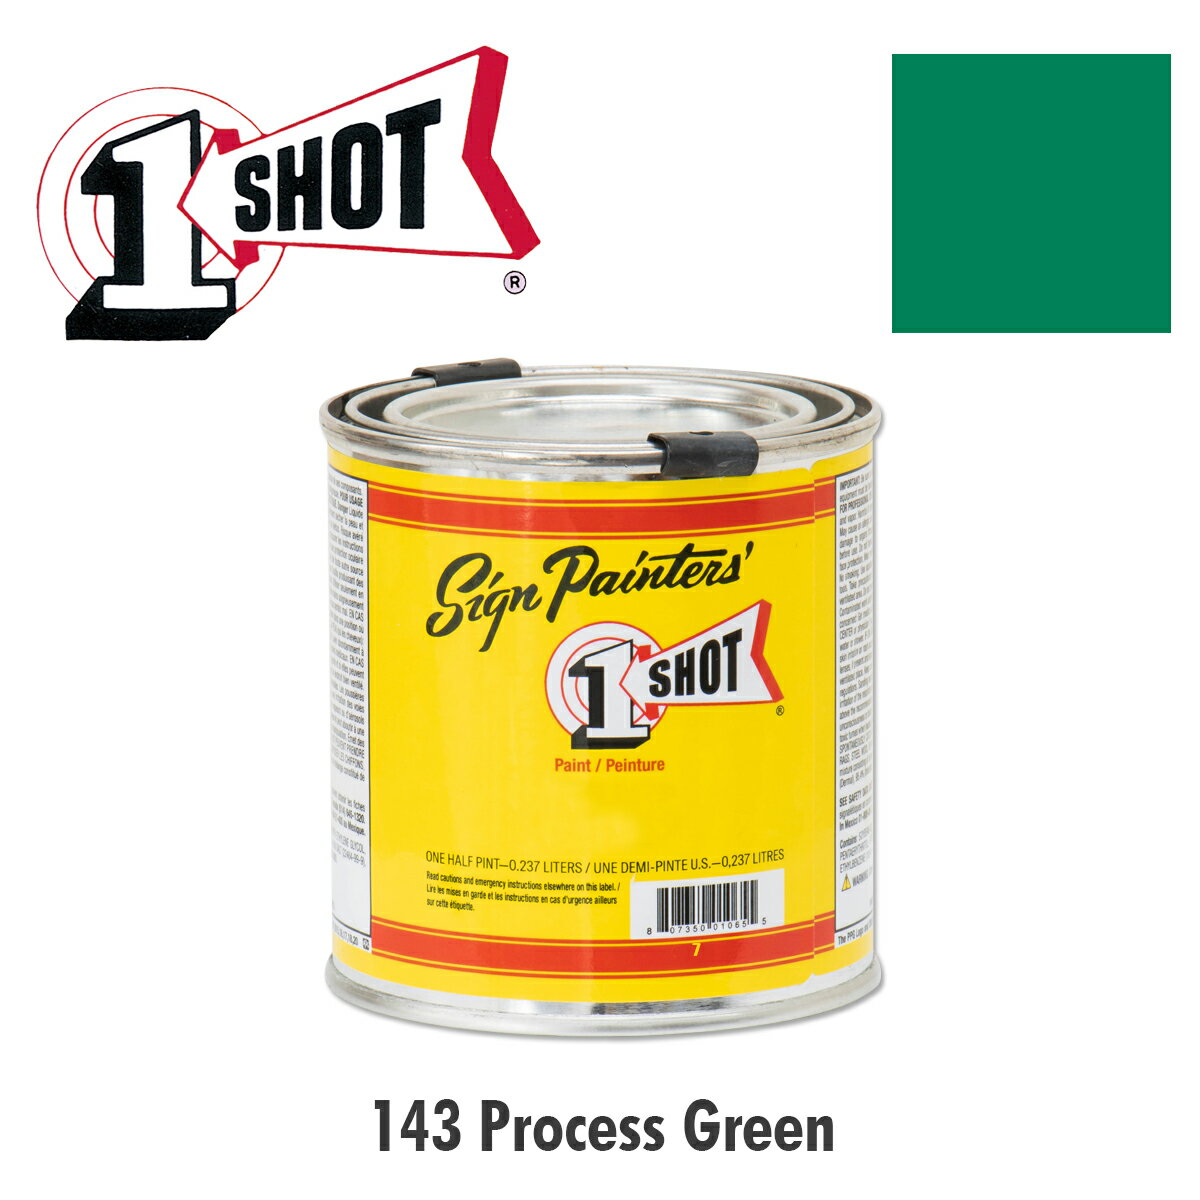 プロセス グリーン (緑) 143 - 1 ショット ペイント 237ml